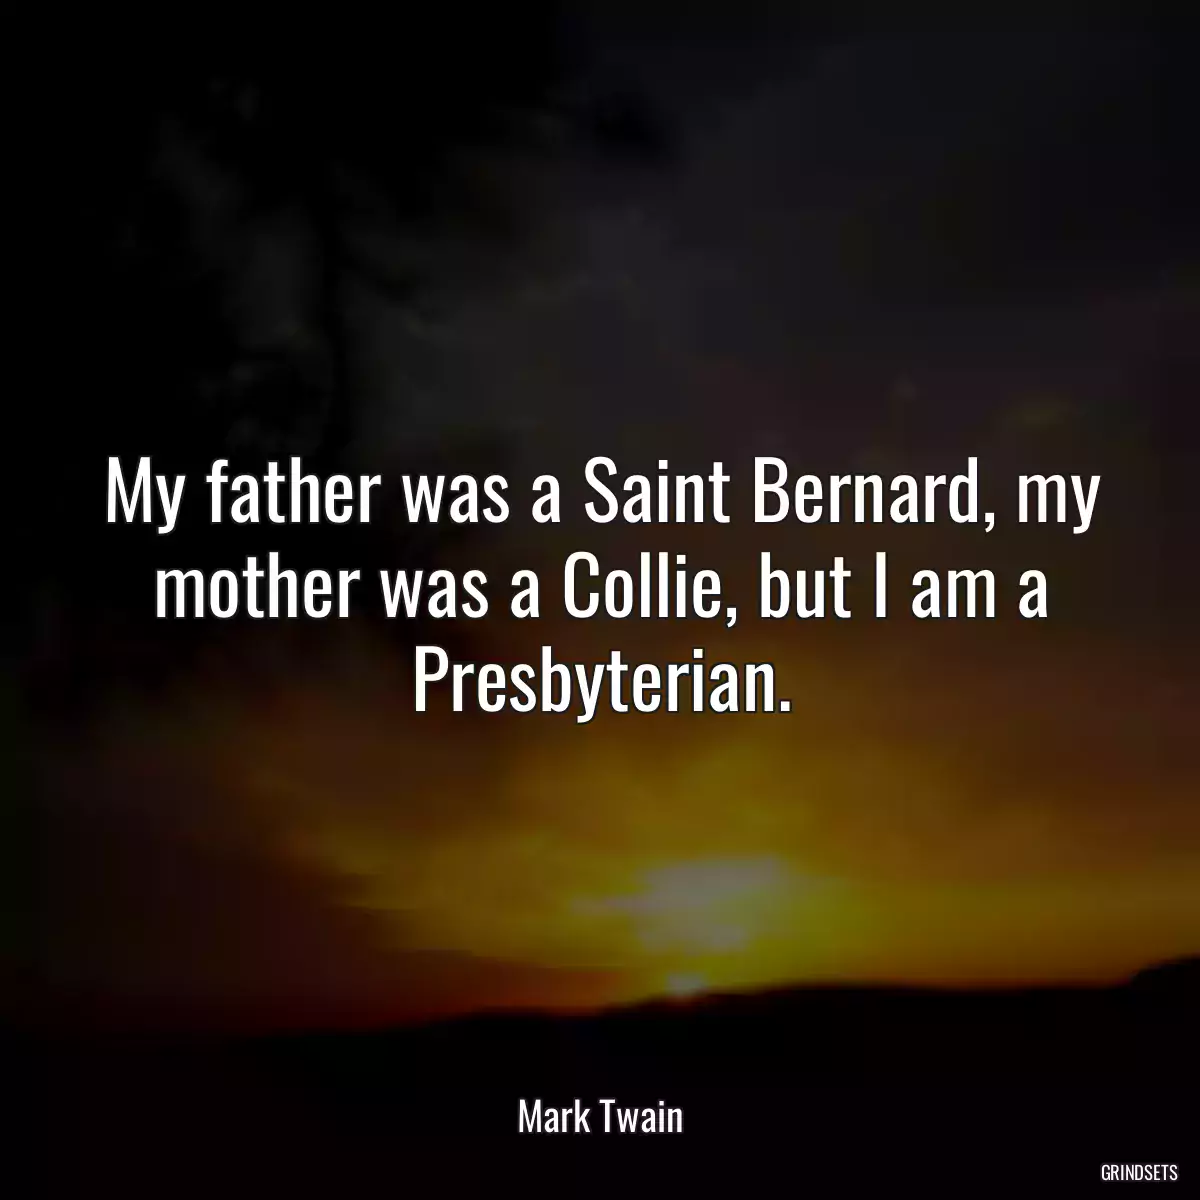 My father was a Saint Bernard, my mother was a Collie, but I am a Presbyterian.